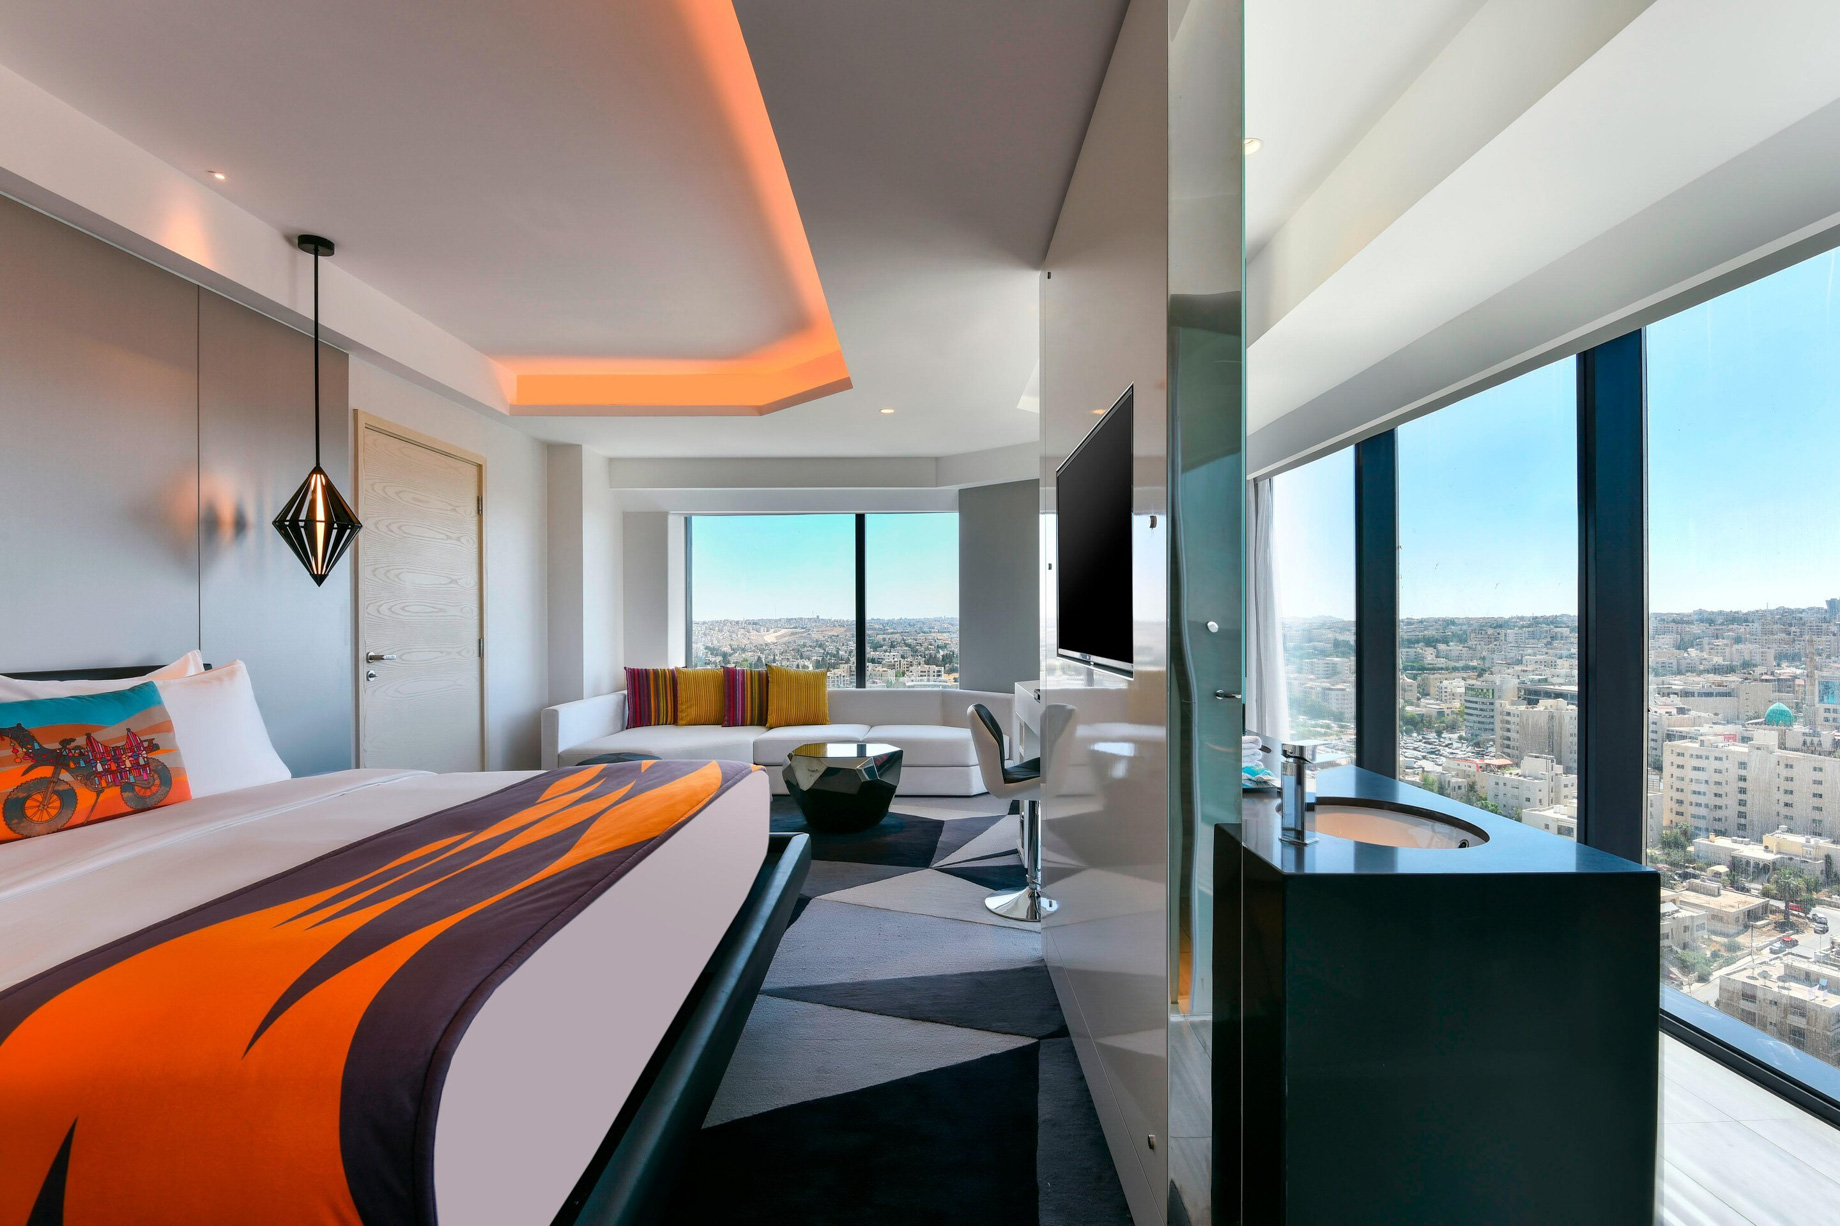 W Amman Hotel – Amman, Jordan – Mega City View Room Bedroom and Bathroom